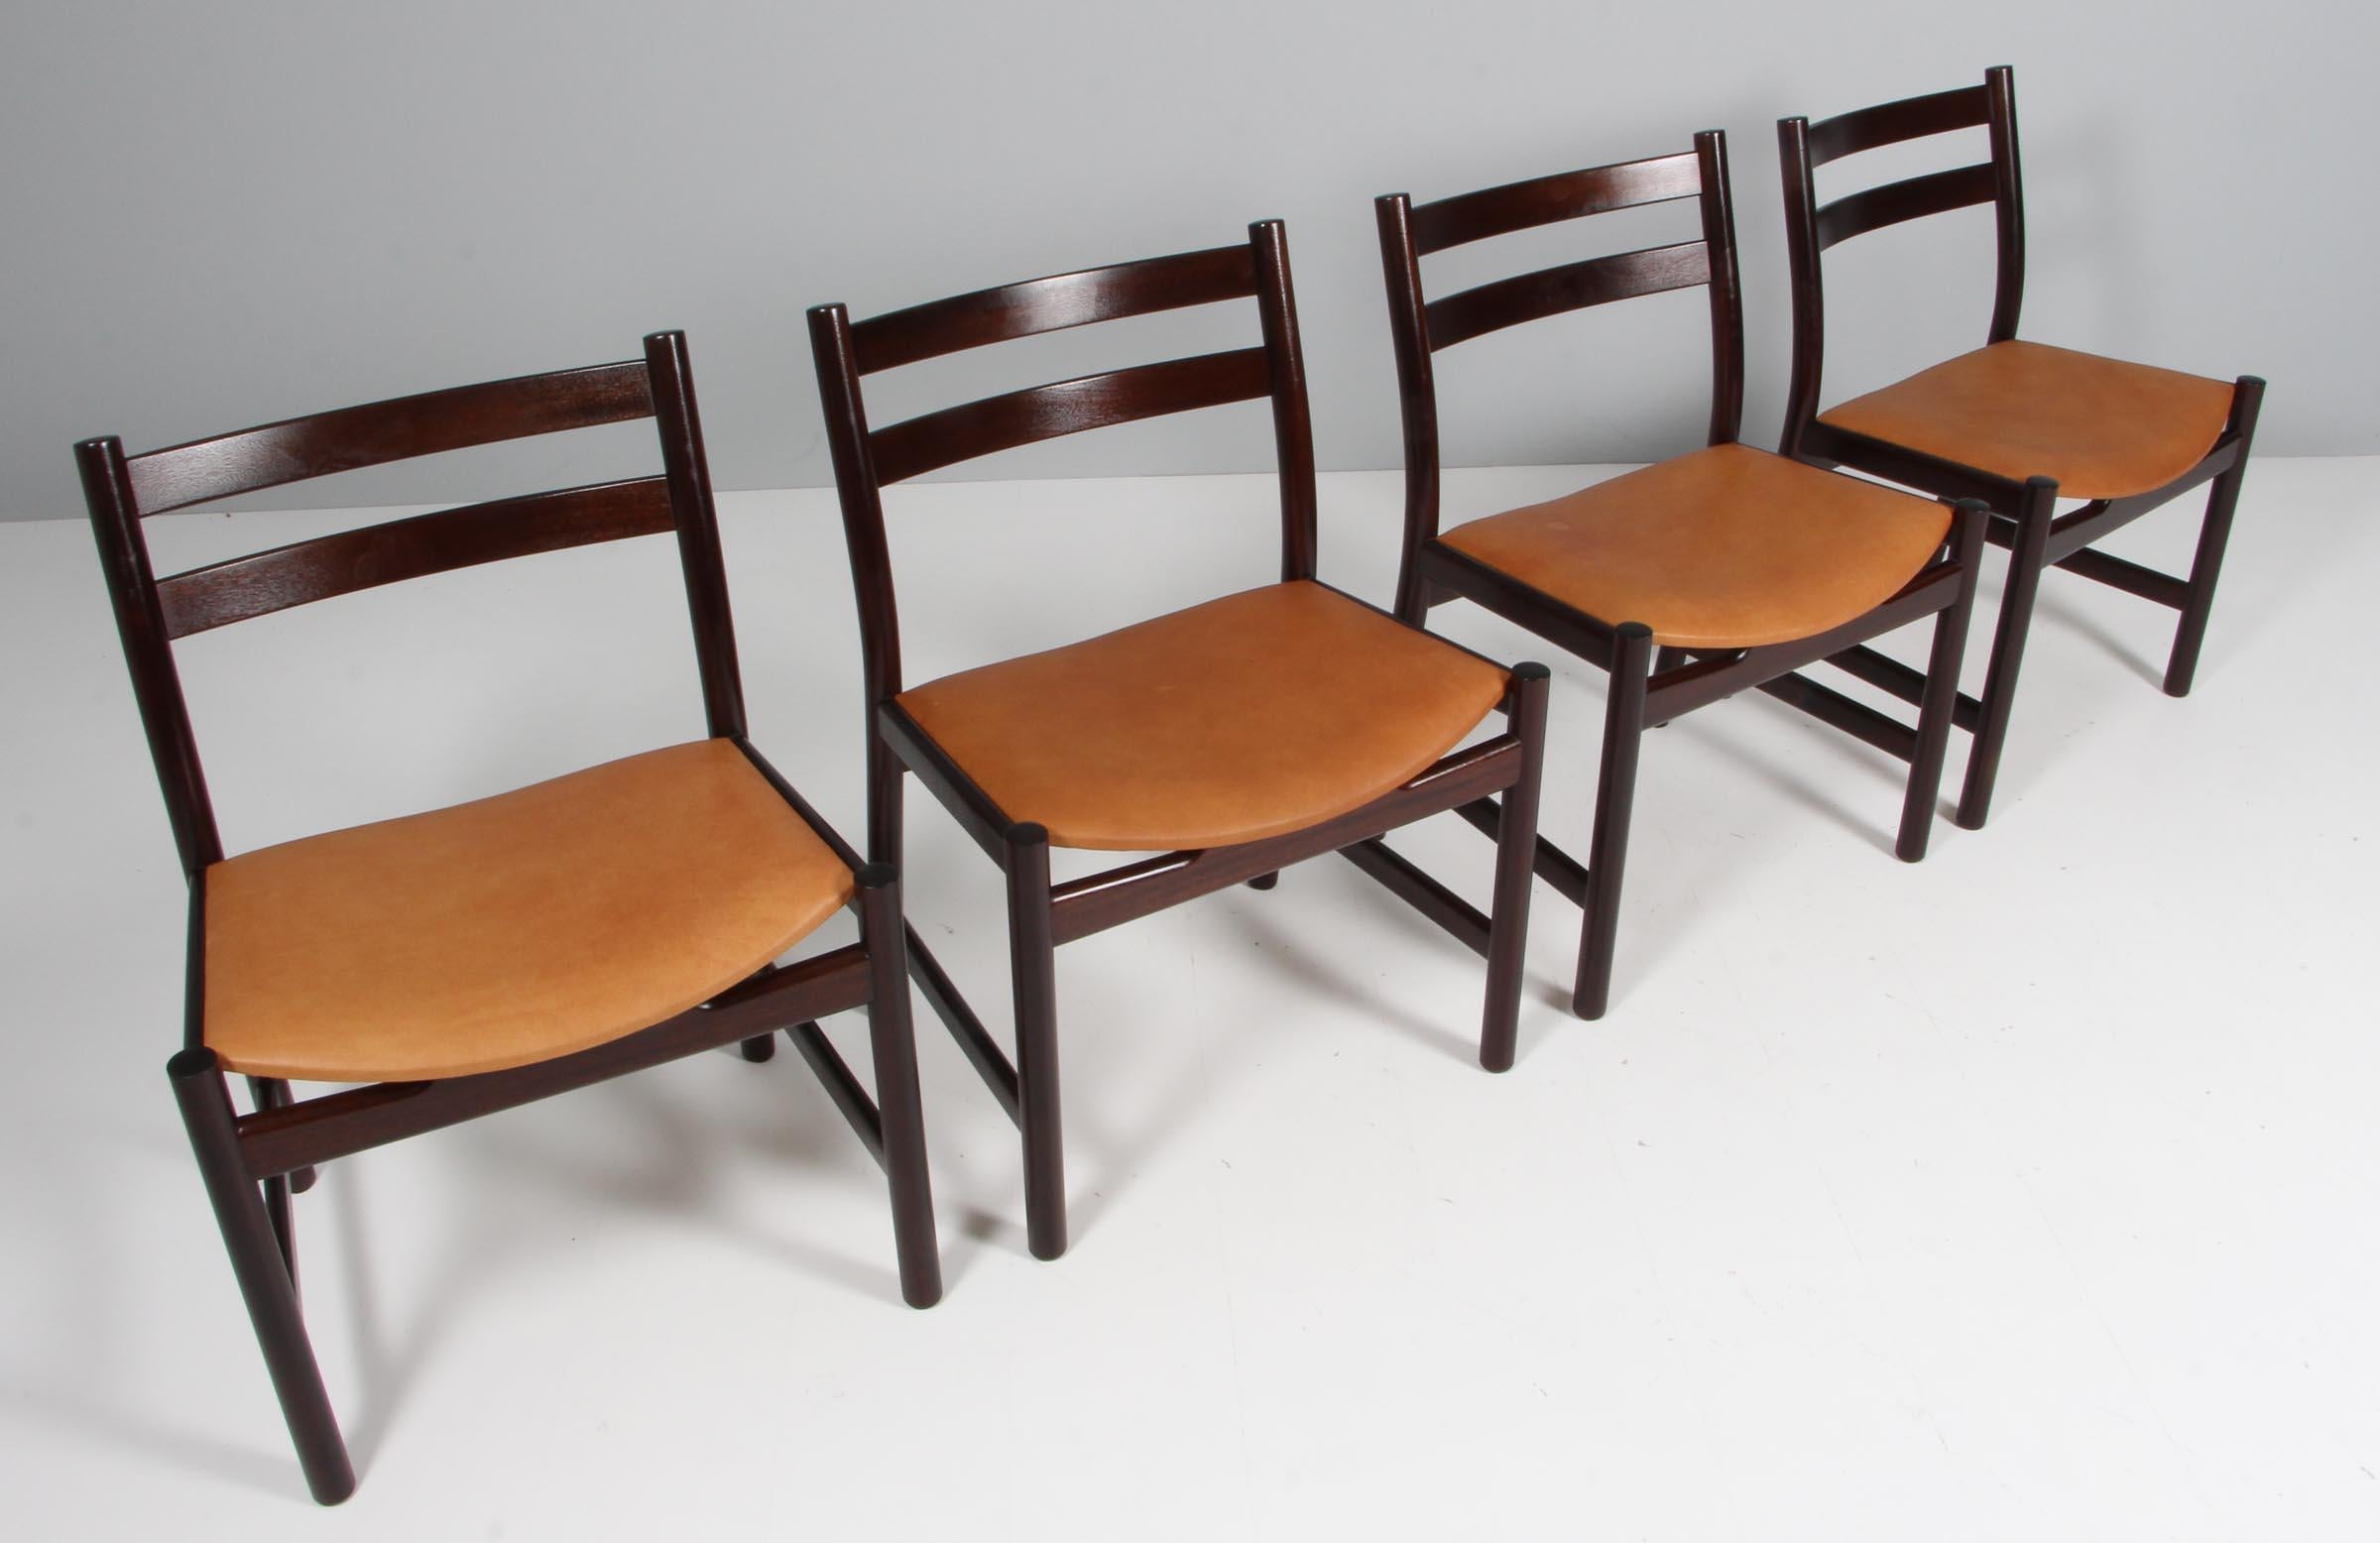 Juego de cuatro sillas de comedor Hans J. Wegner de caoba

Tapizado nuevo con piel anilina de color tostado vintage.

Fabricado por Carl Hansen, modelo CH47


Hans J. Wegner nació en 1914 en Tønder, al sur de Dinamarca, hijo de un zapatero. A los 17